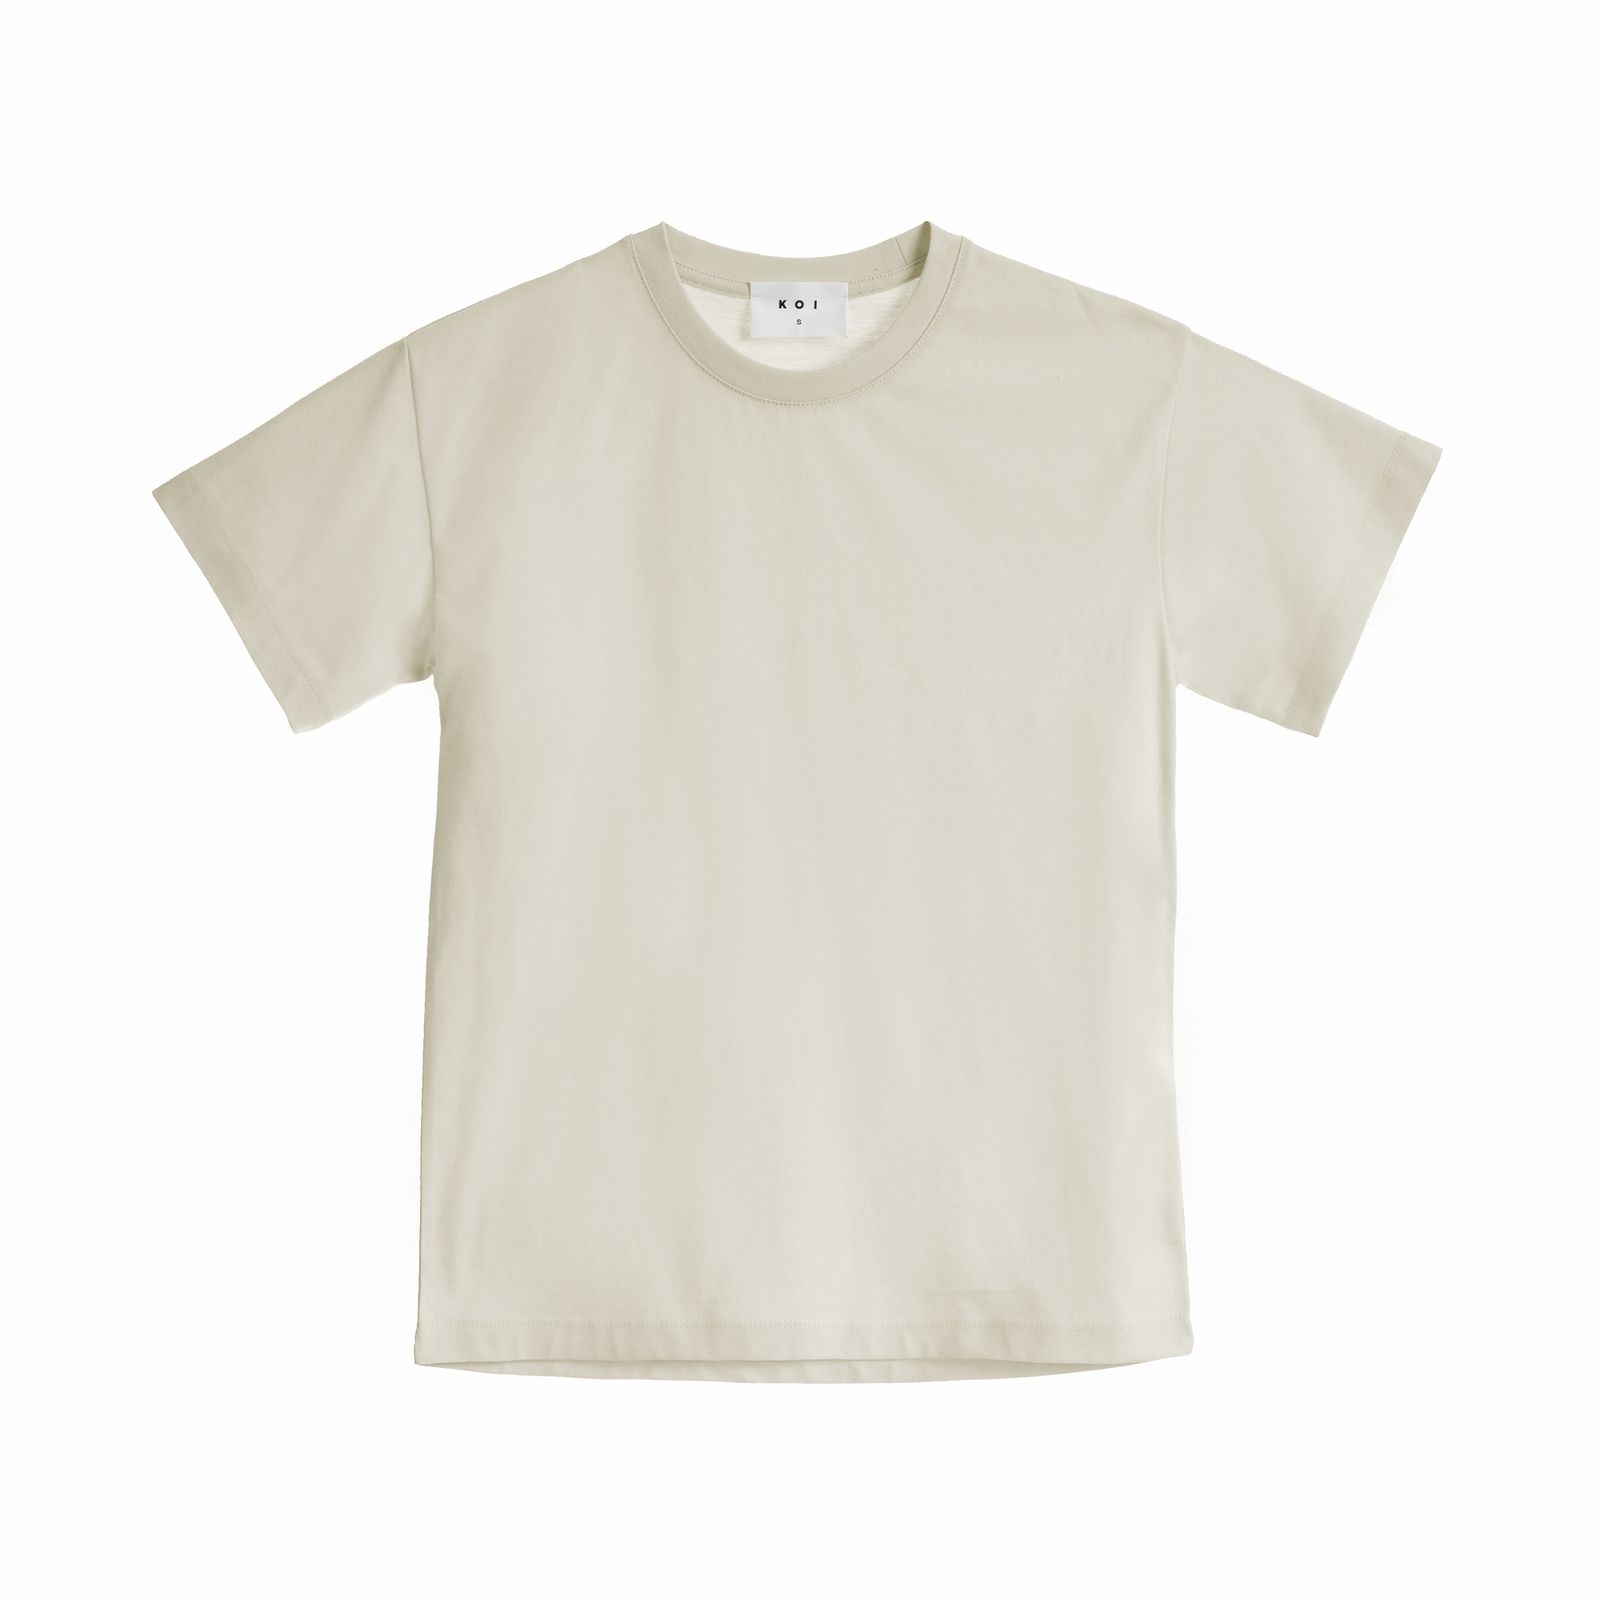 تی شرت آستین کوتاه زنانه کوی مدل رگولار هی گرل کد 444 رنگ شیری -  - 1